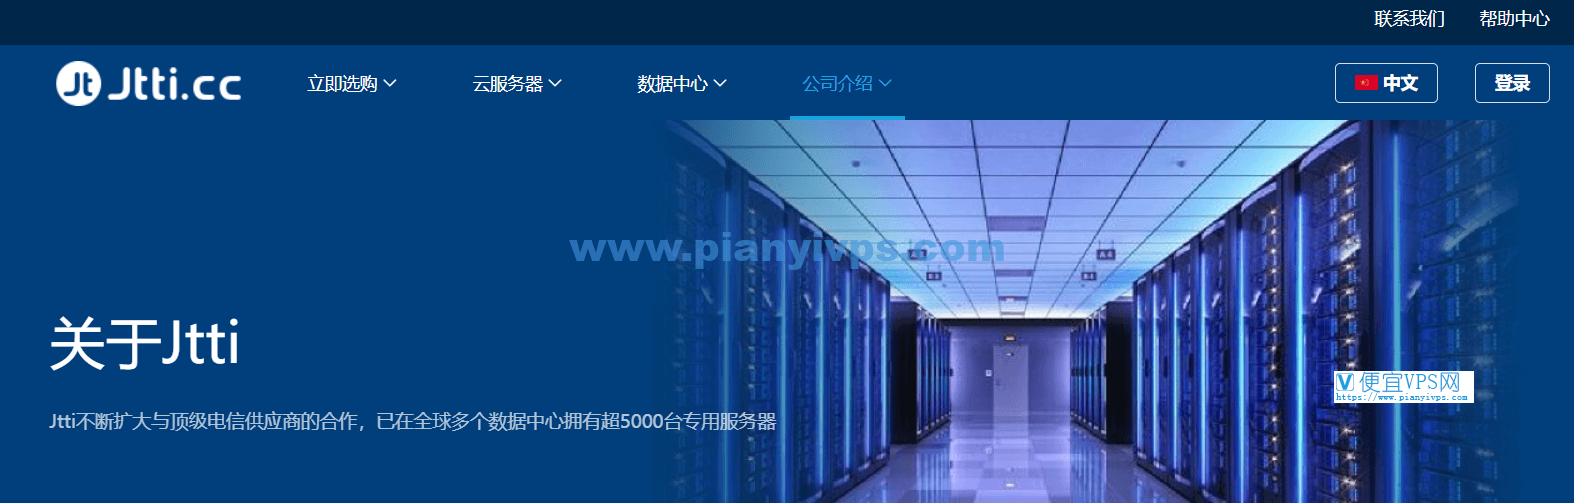 Jtti：香港云服务器 2 折优惠，年付 $33.22 起，CN2 优化线路，不限制流量使用-QQ1000资源网